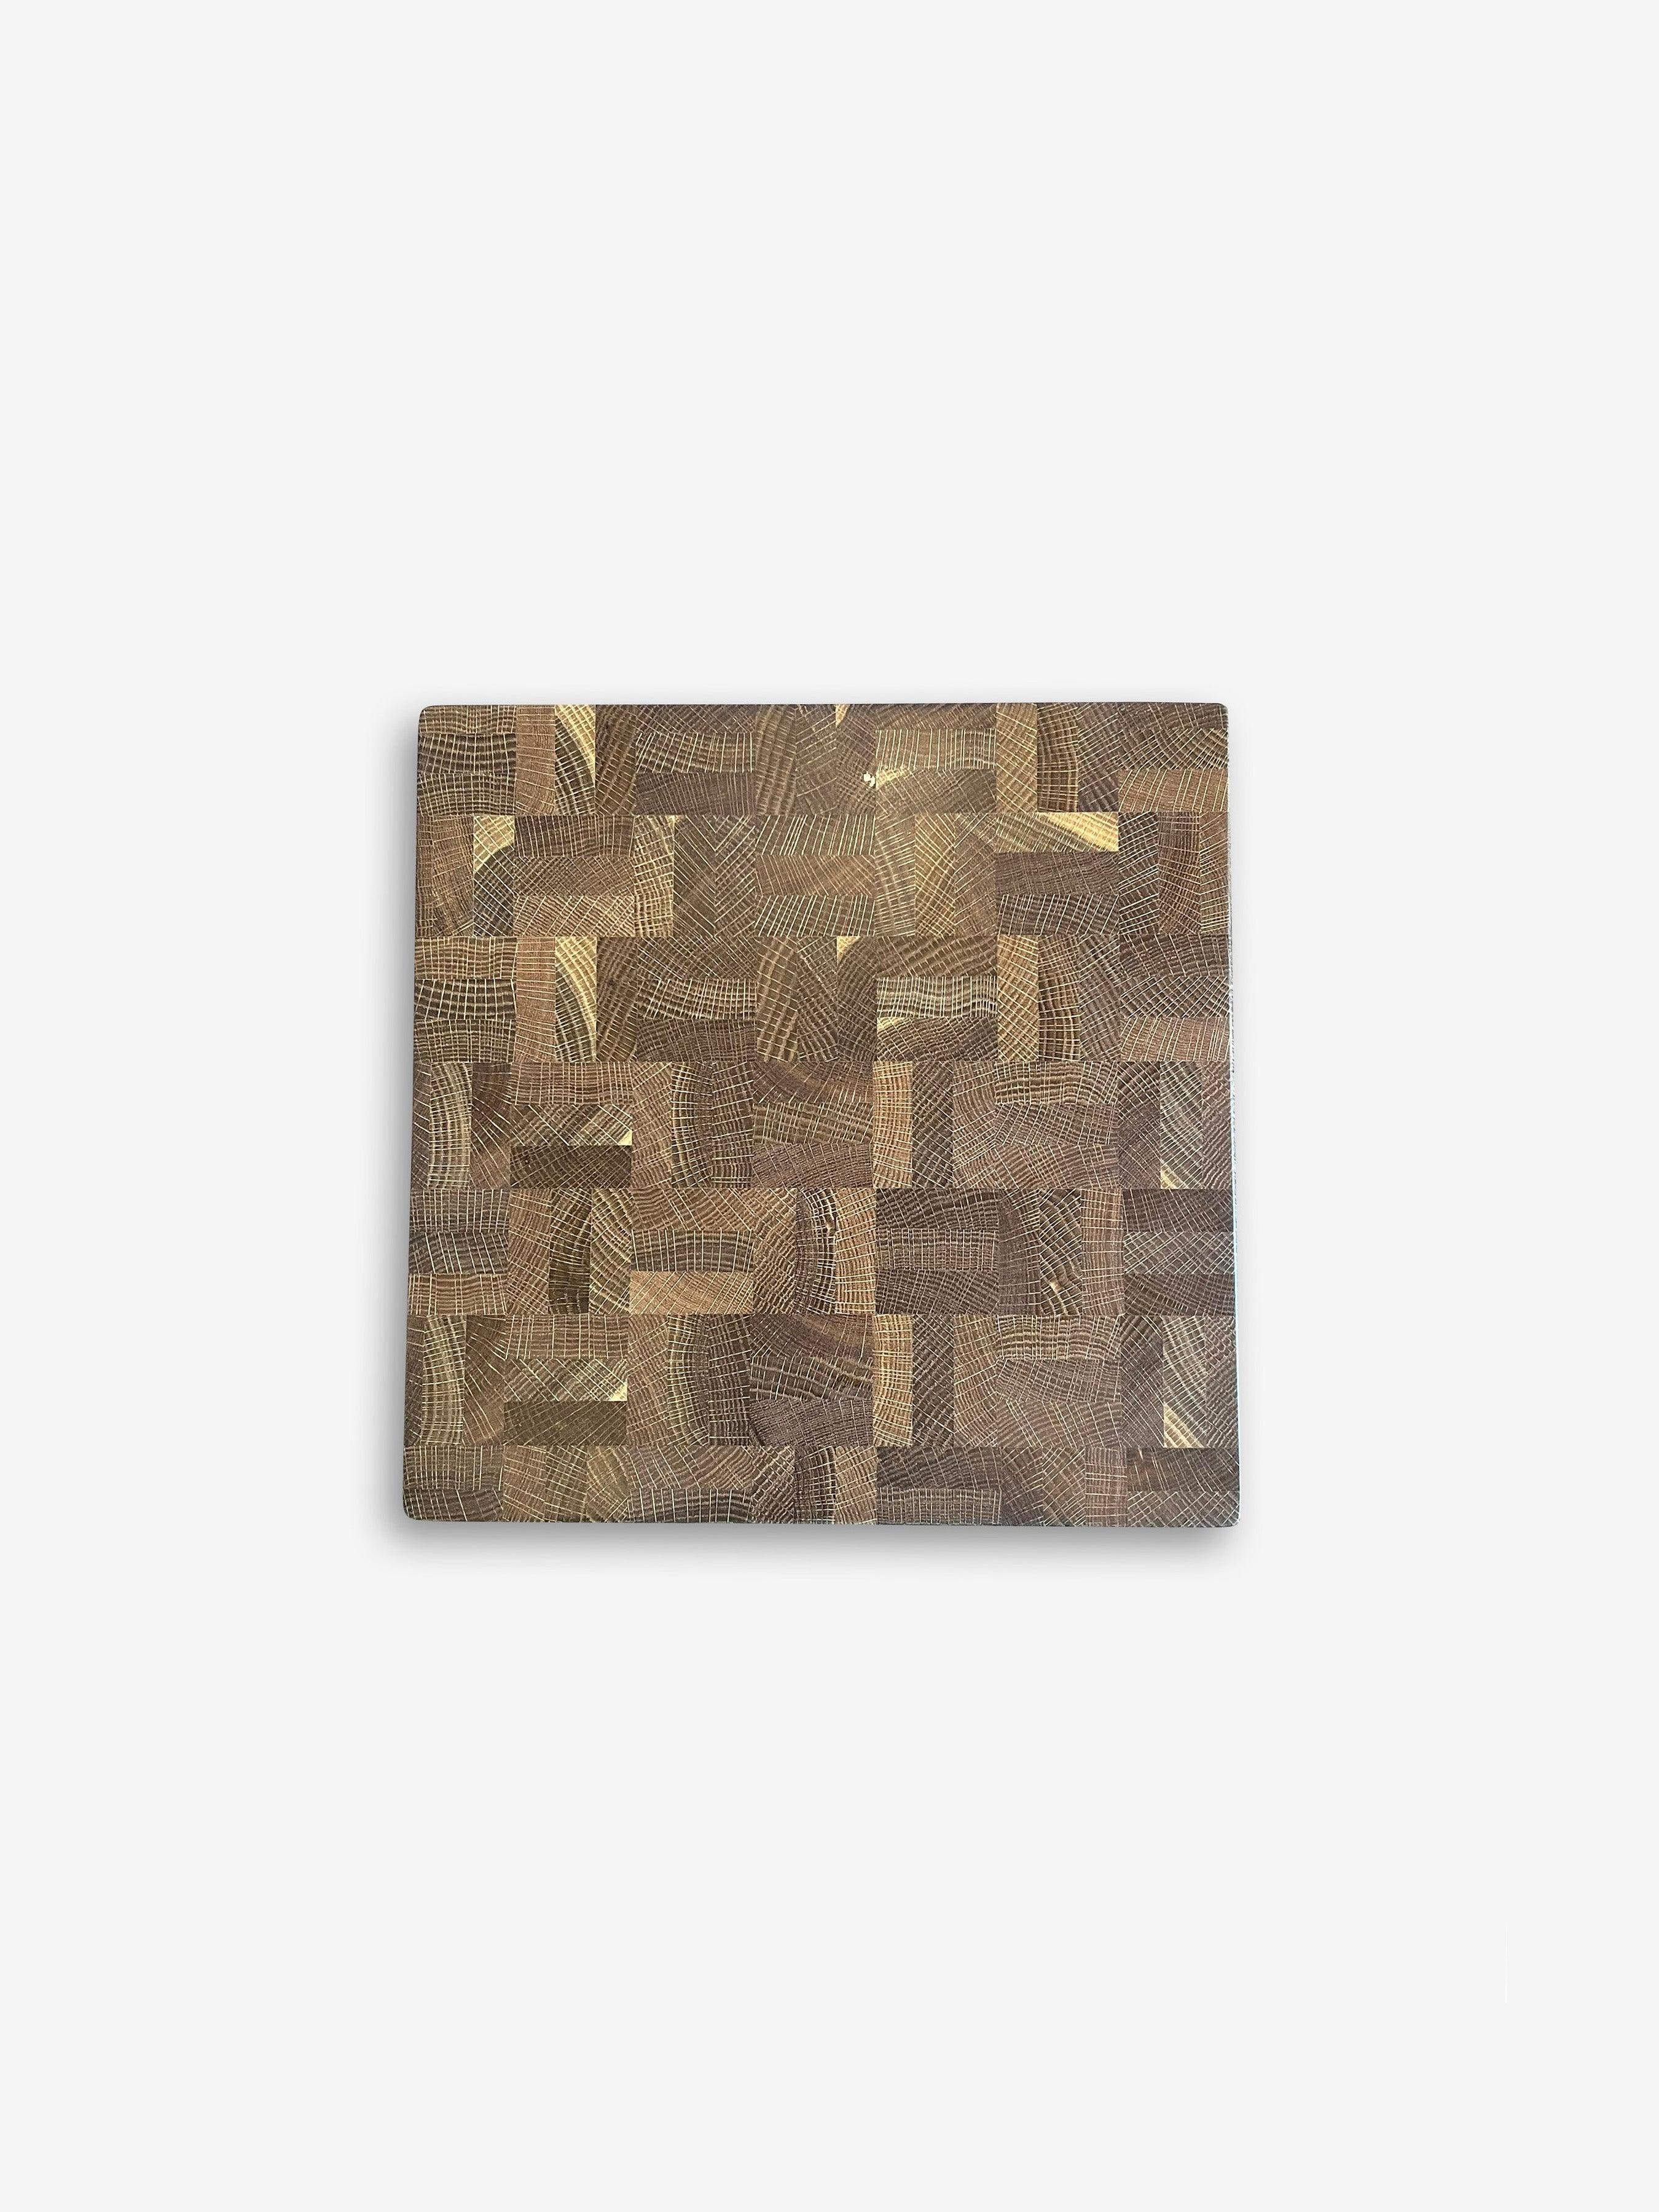 14 Cut Chop Square Cutting Board in Fumed Oak